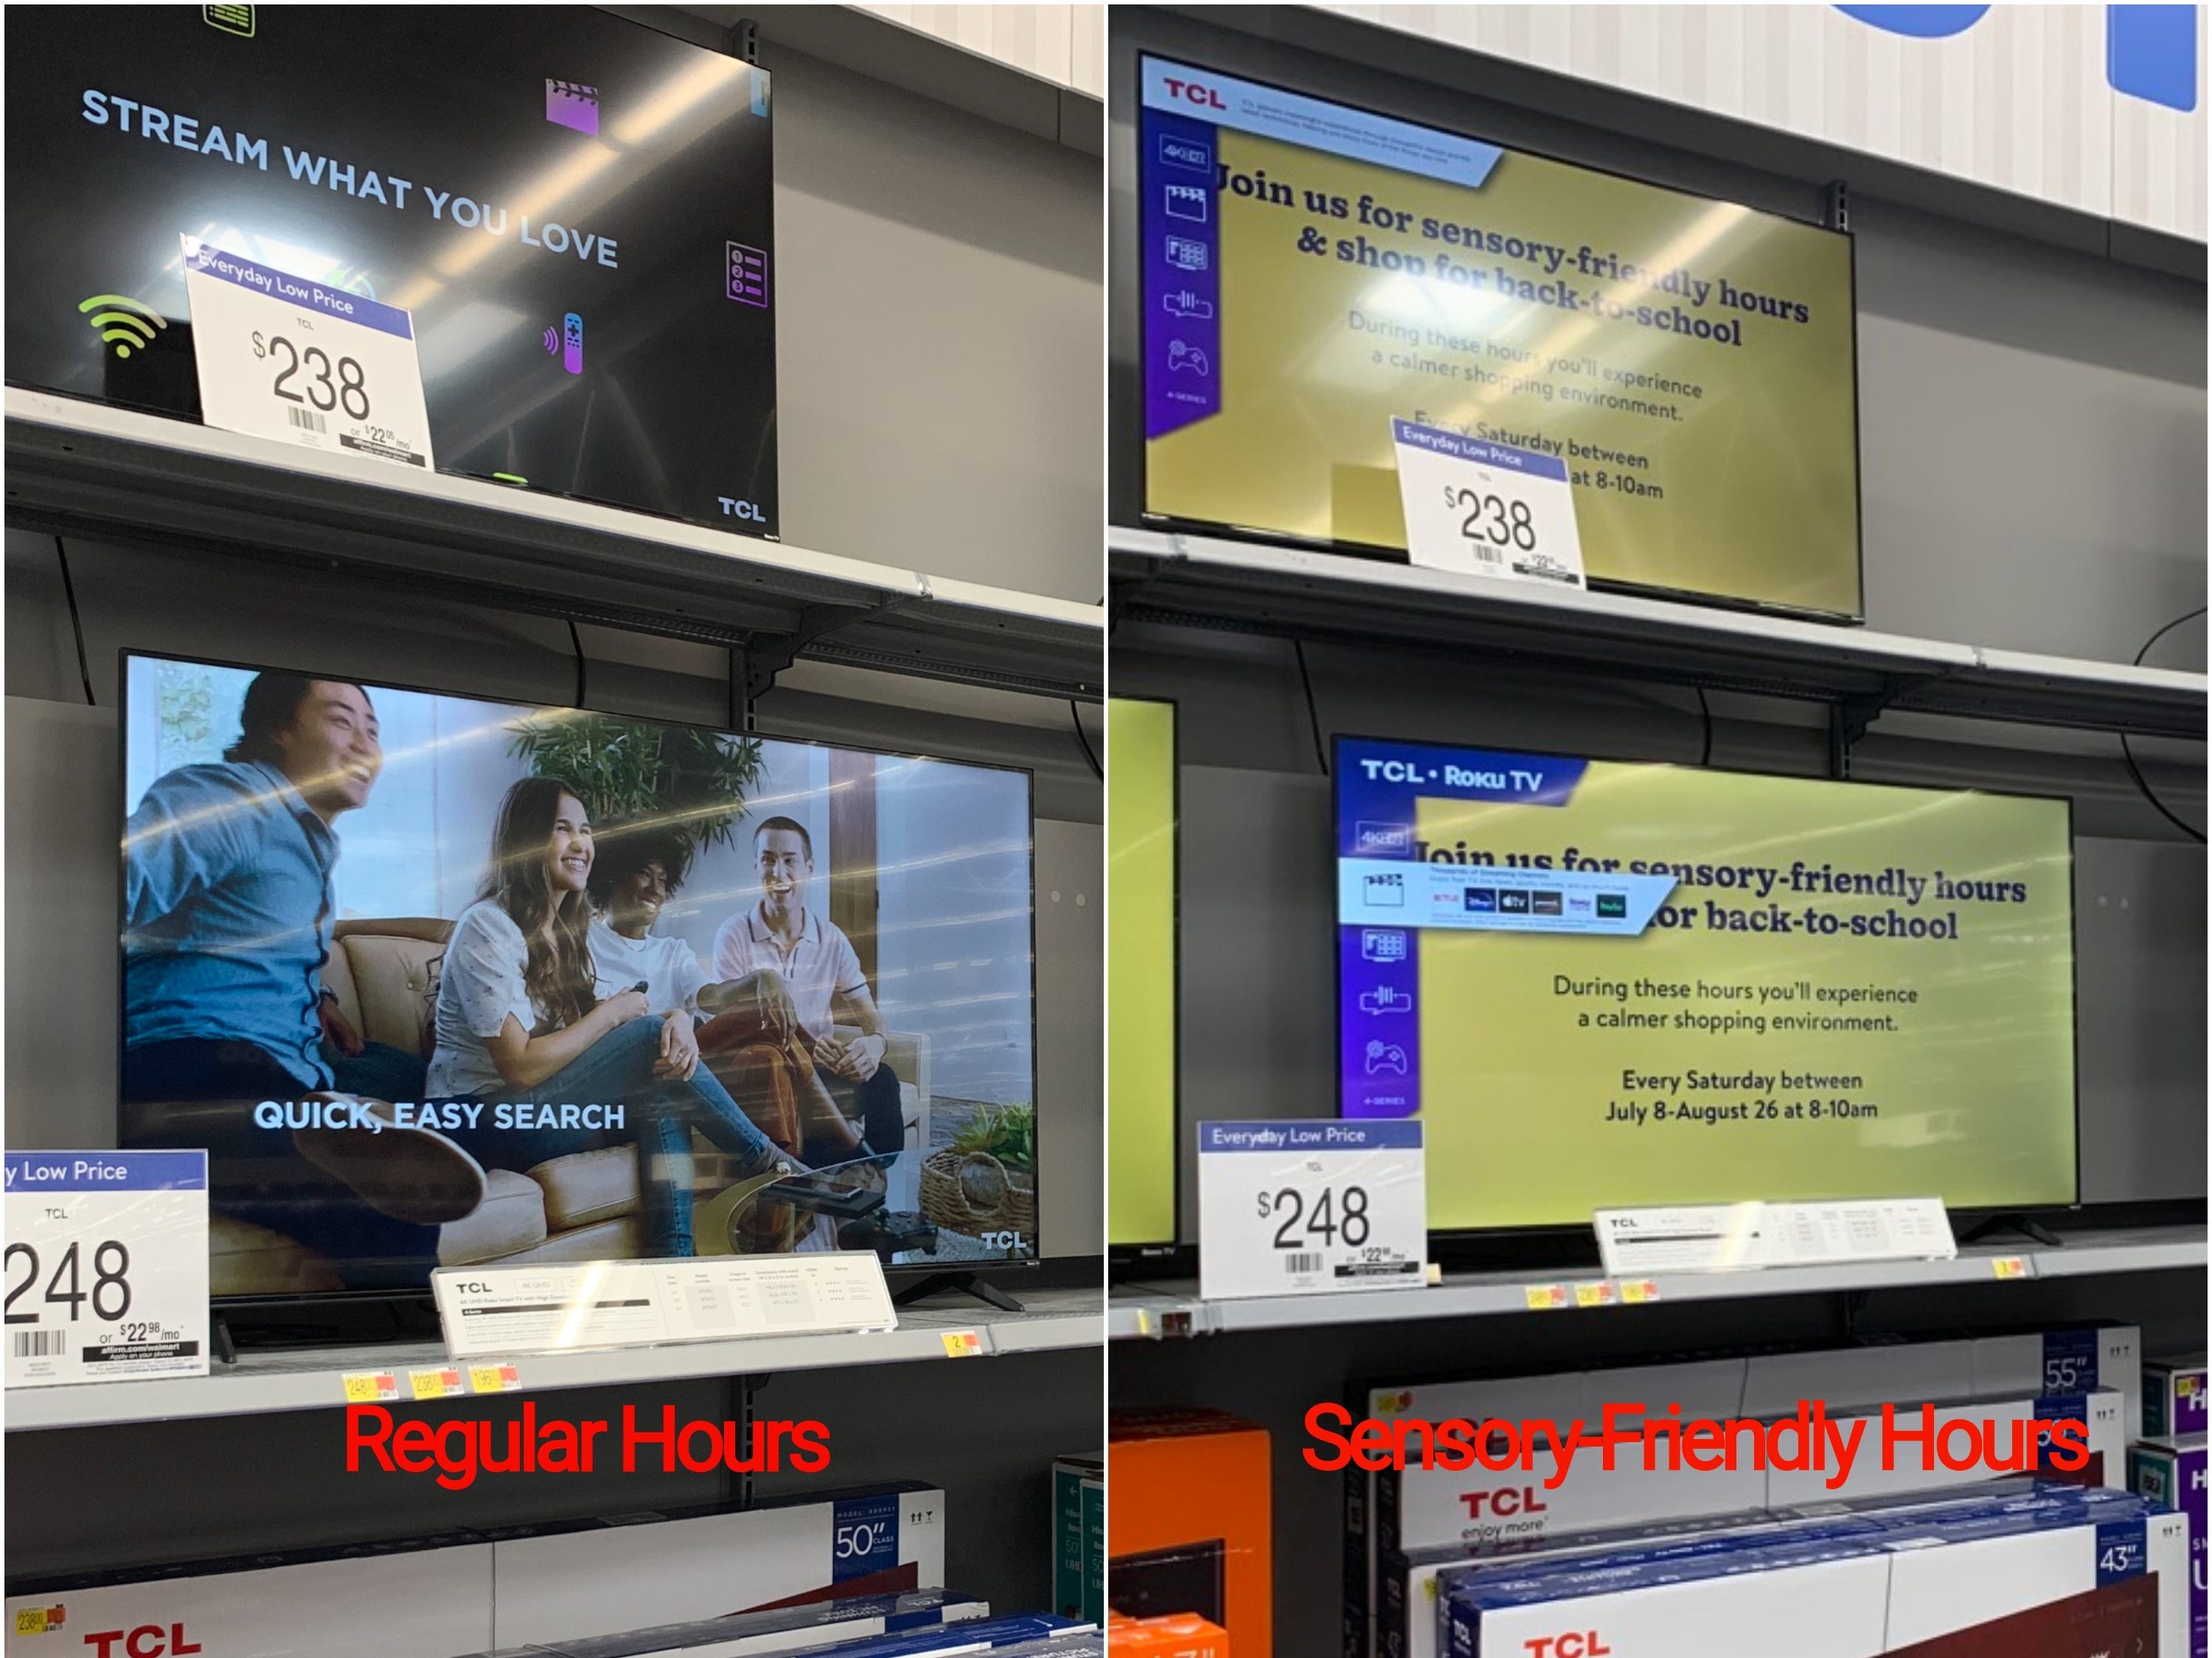 Regelmäßige Walmart-Einkaufszeiten im Vergleich zu sensorfreundlichen Einkaufszeiten